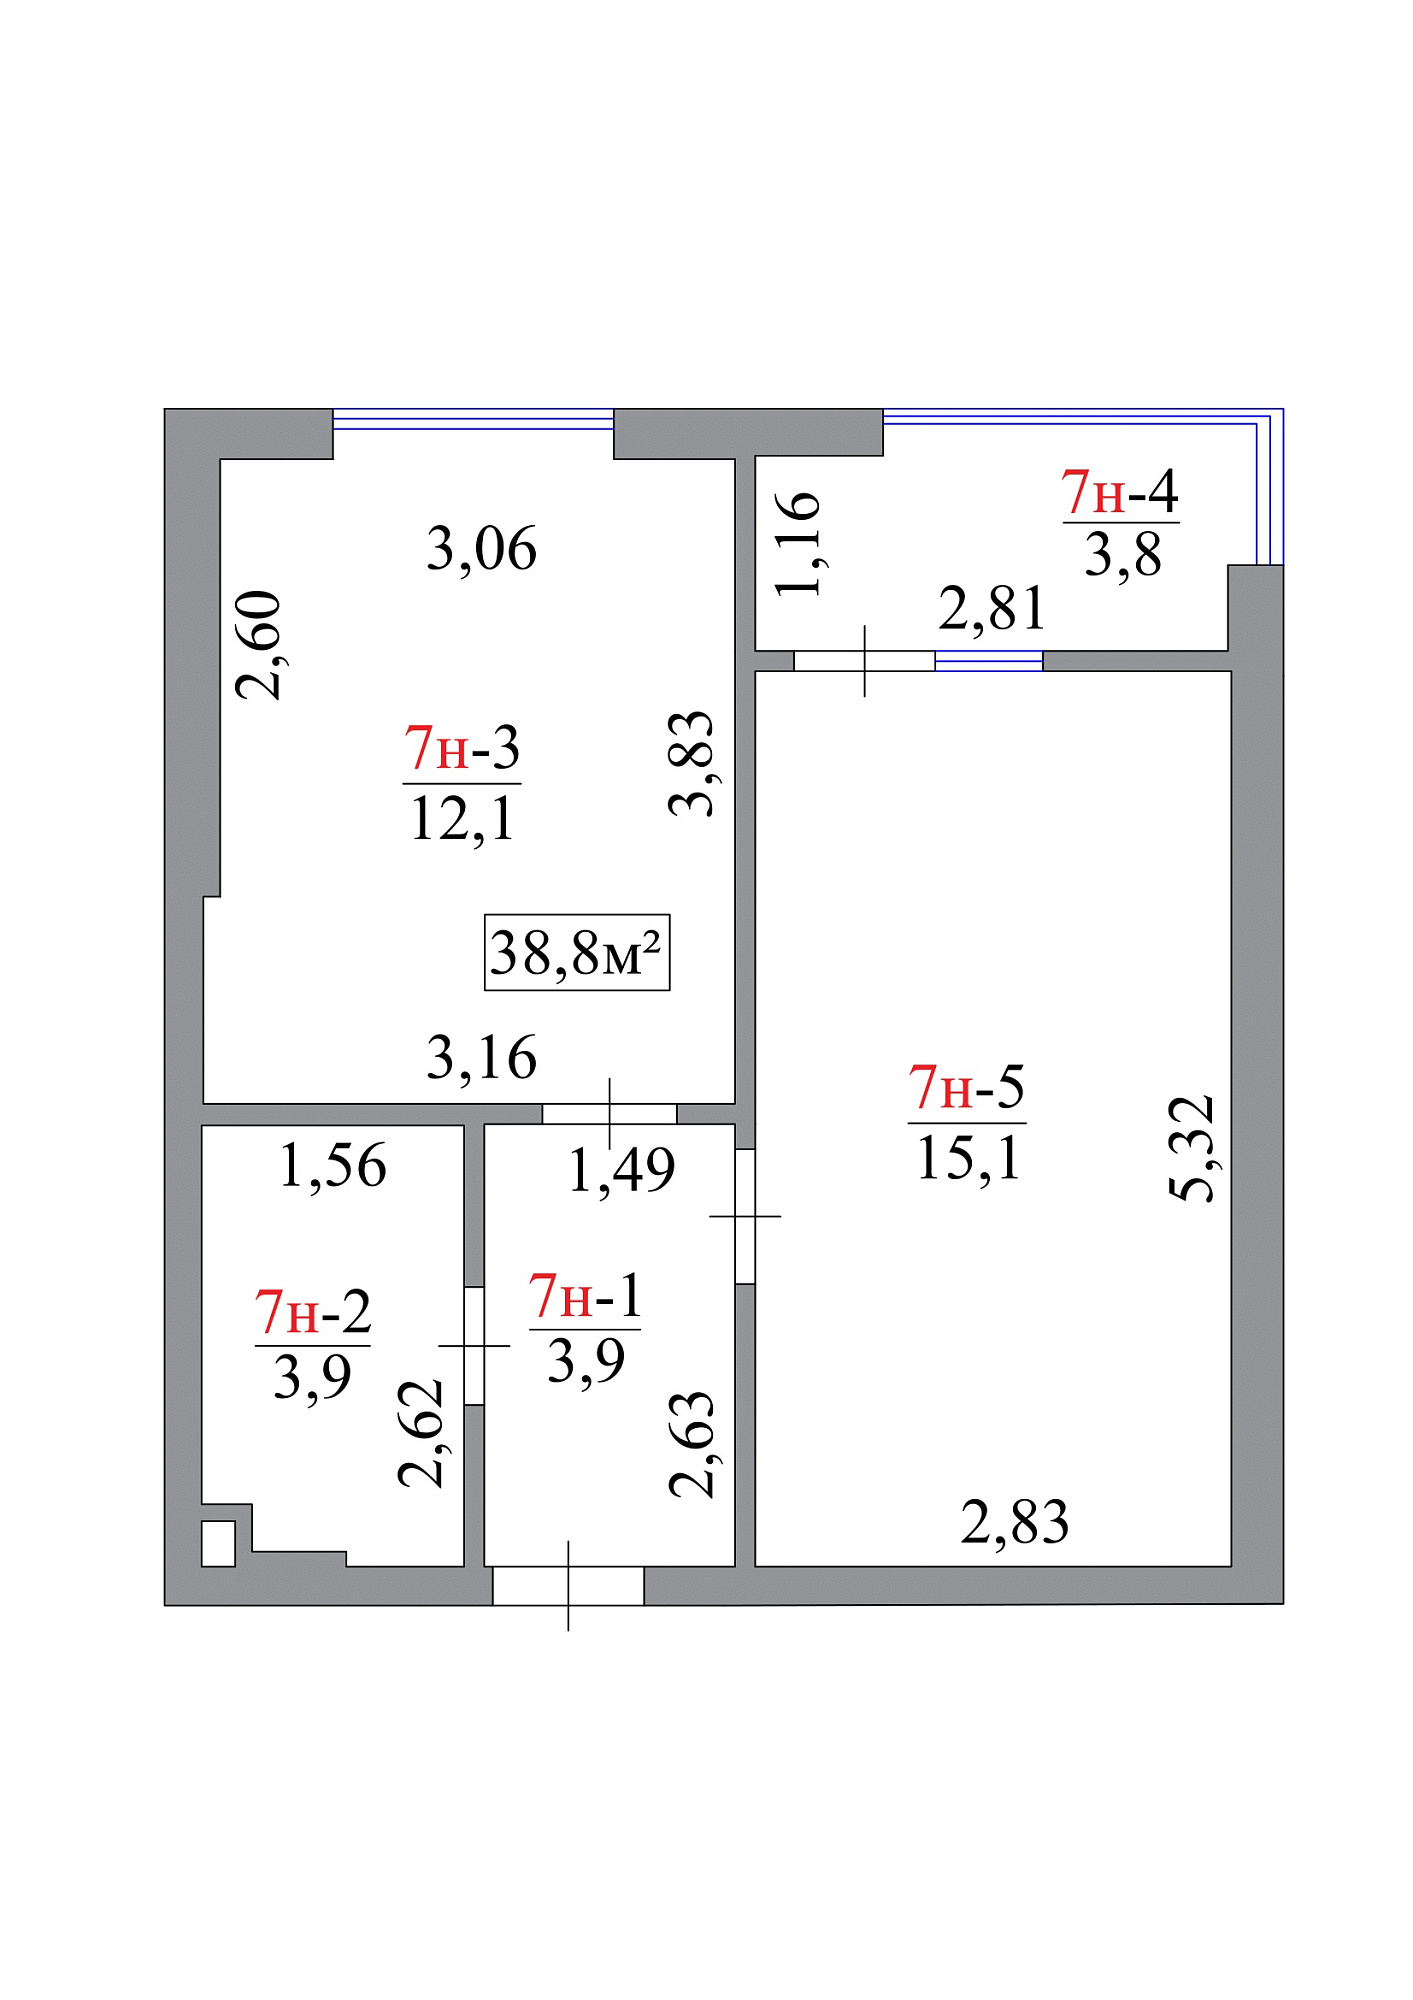 Планування 1-к квартира площею 38.8м2, AB-07-01/0007а.